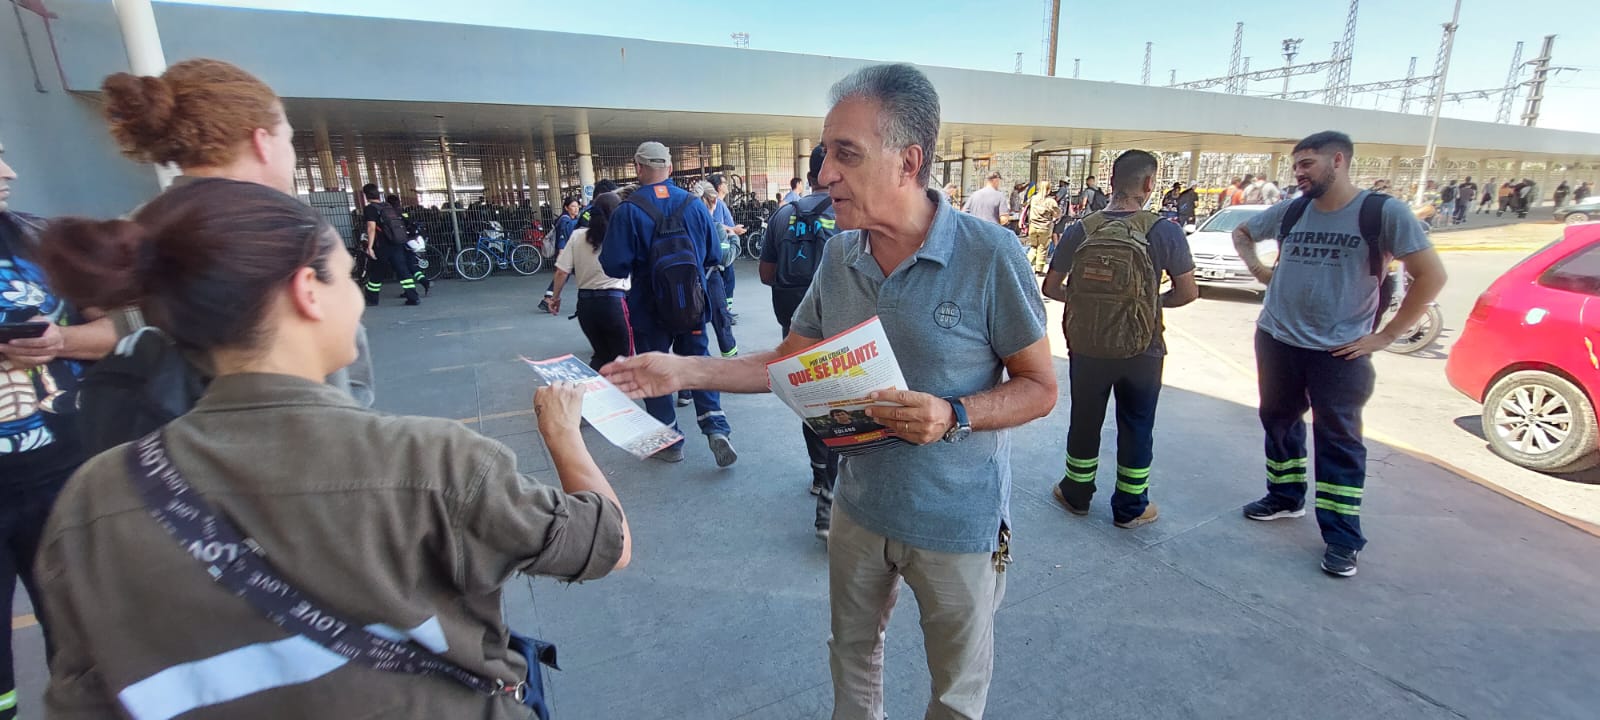 Néstor Pitrola en Campana: “Luche y se van…todos los políticos capitalistas”